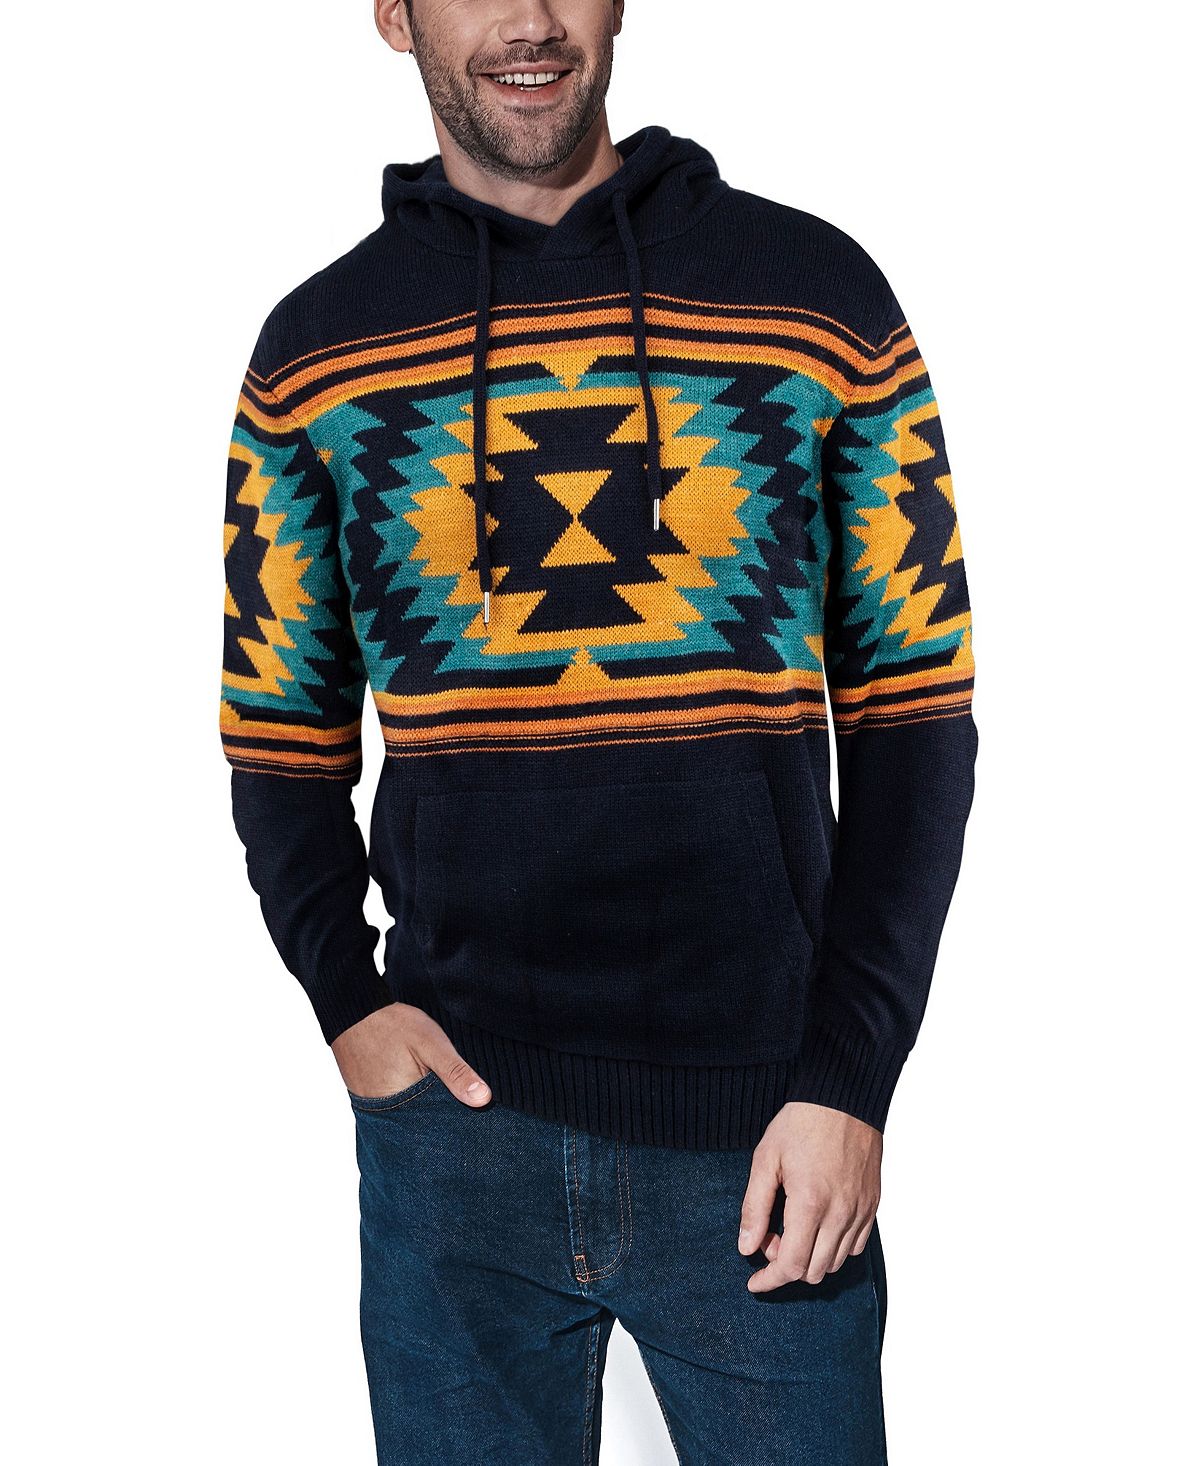 Мужской свитер с капюшоном aztec X-Ray, синий